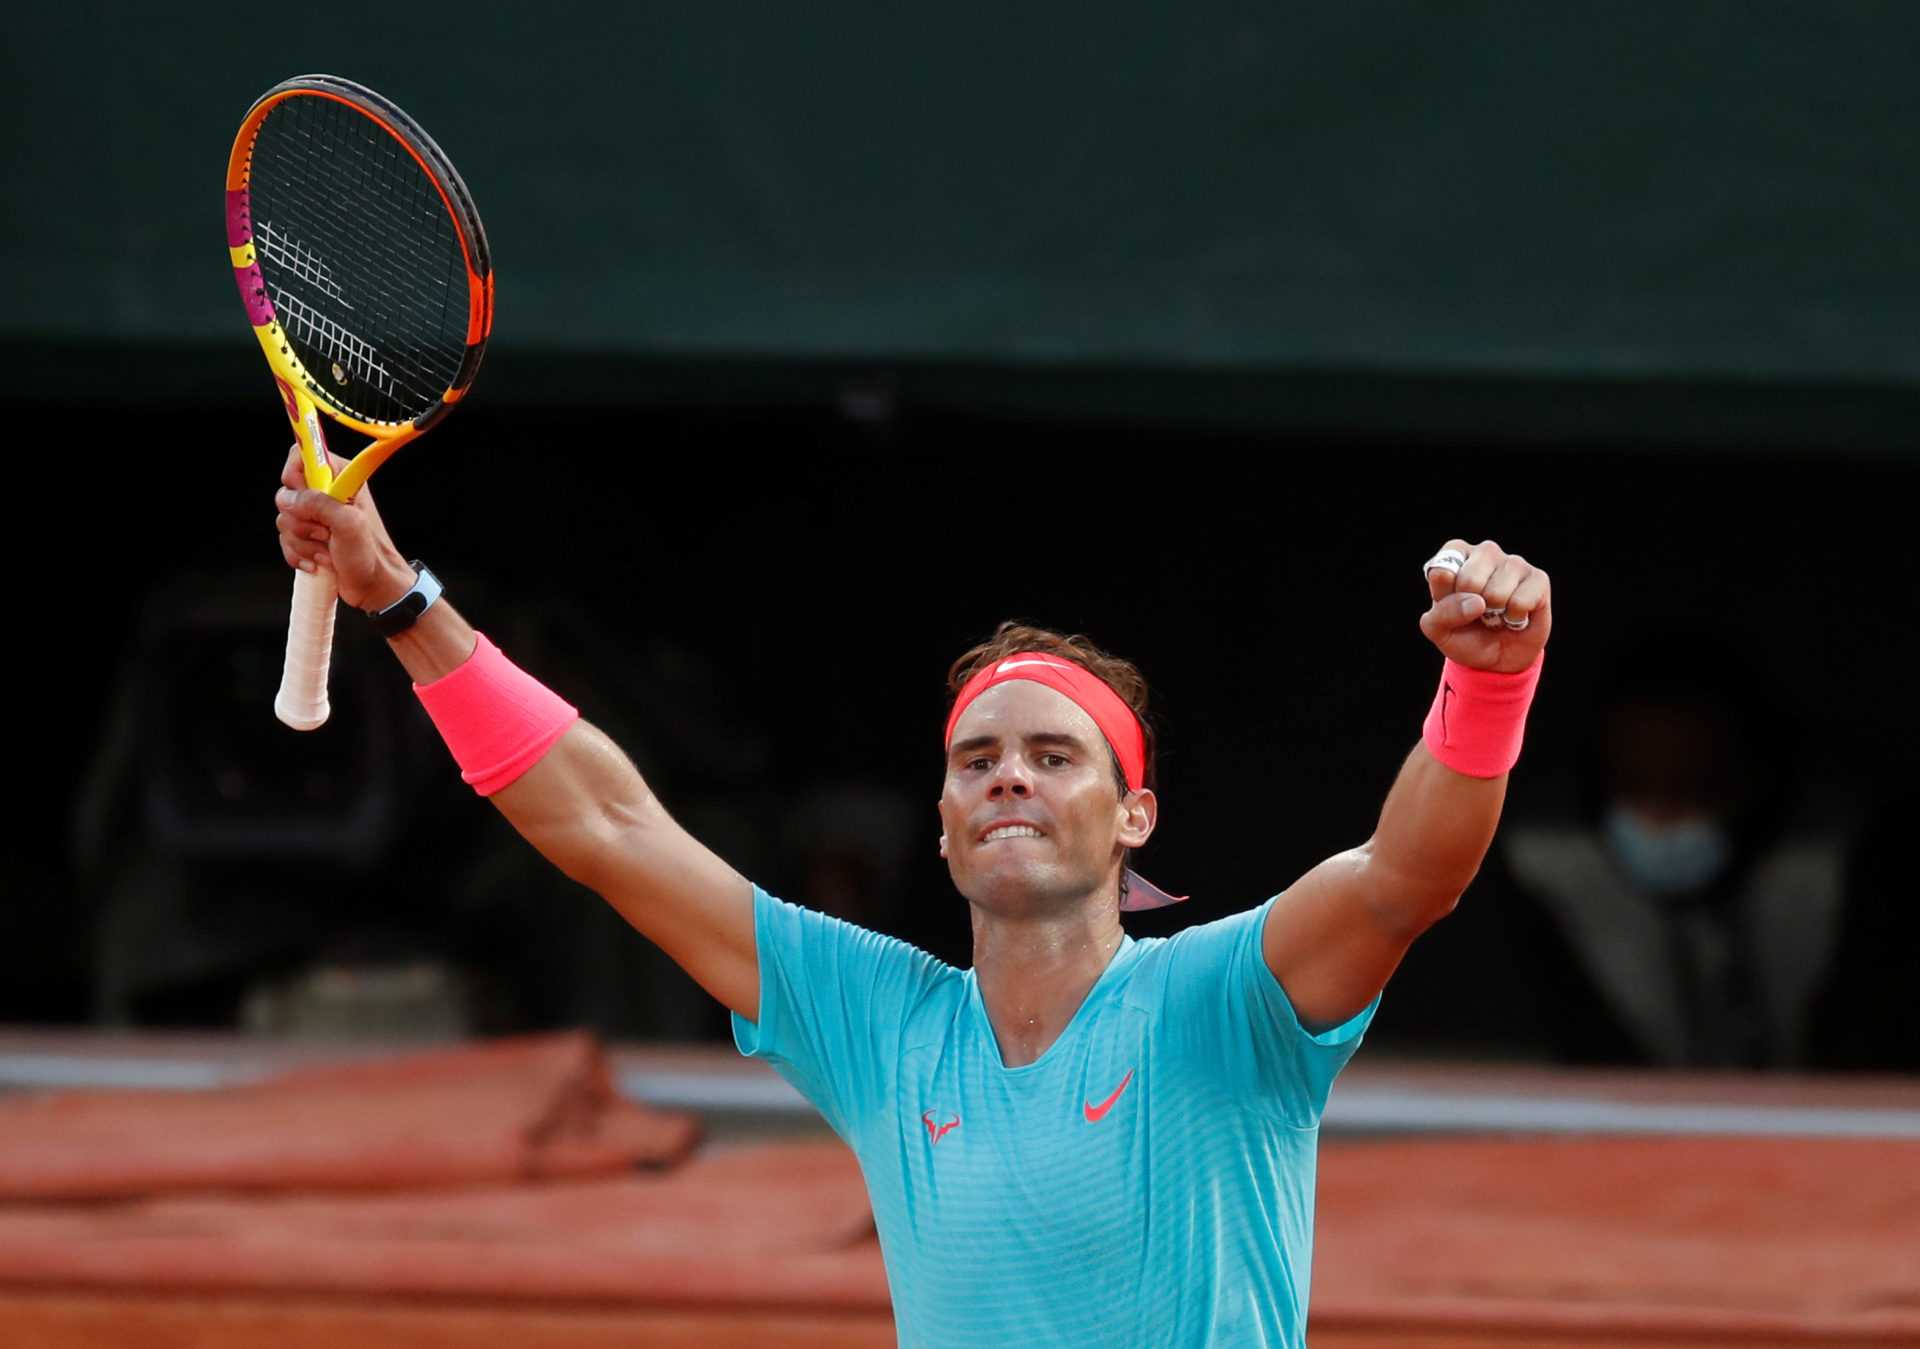 Les fans choisissent Rafael Nadal comme favori contre Novak Djokovic avant la finale de Roland-Garros 2020